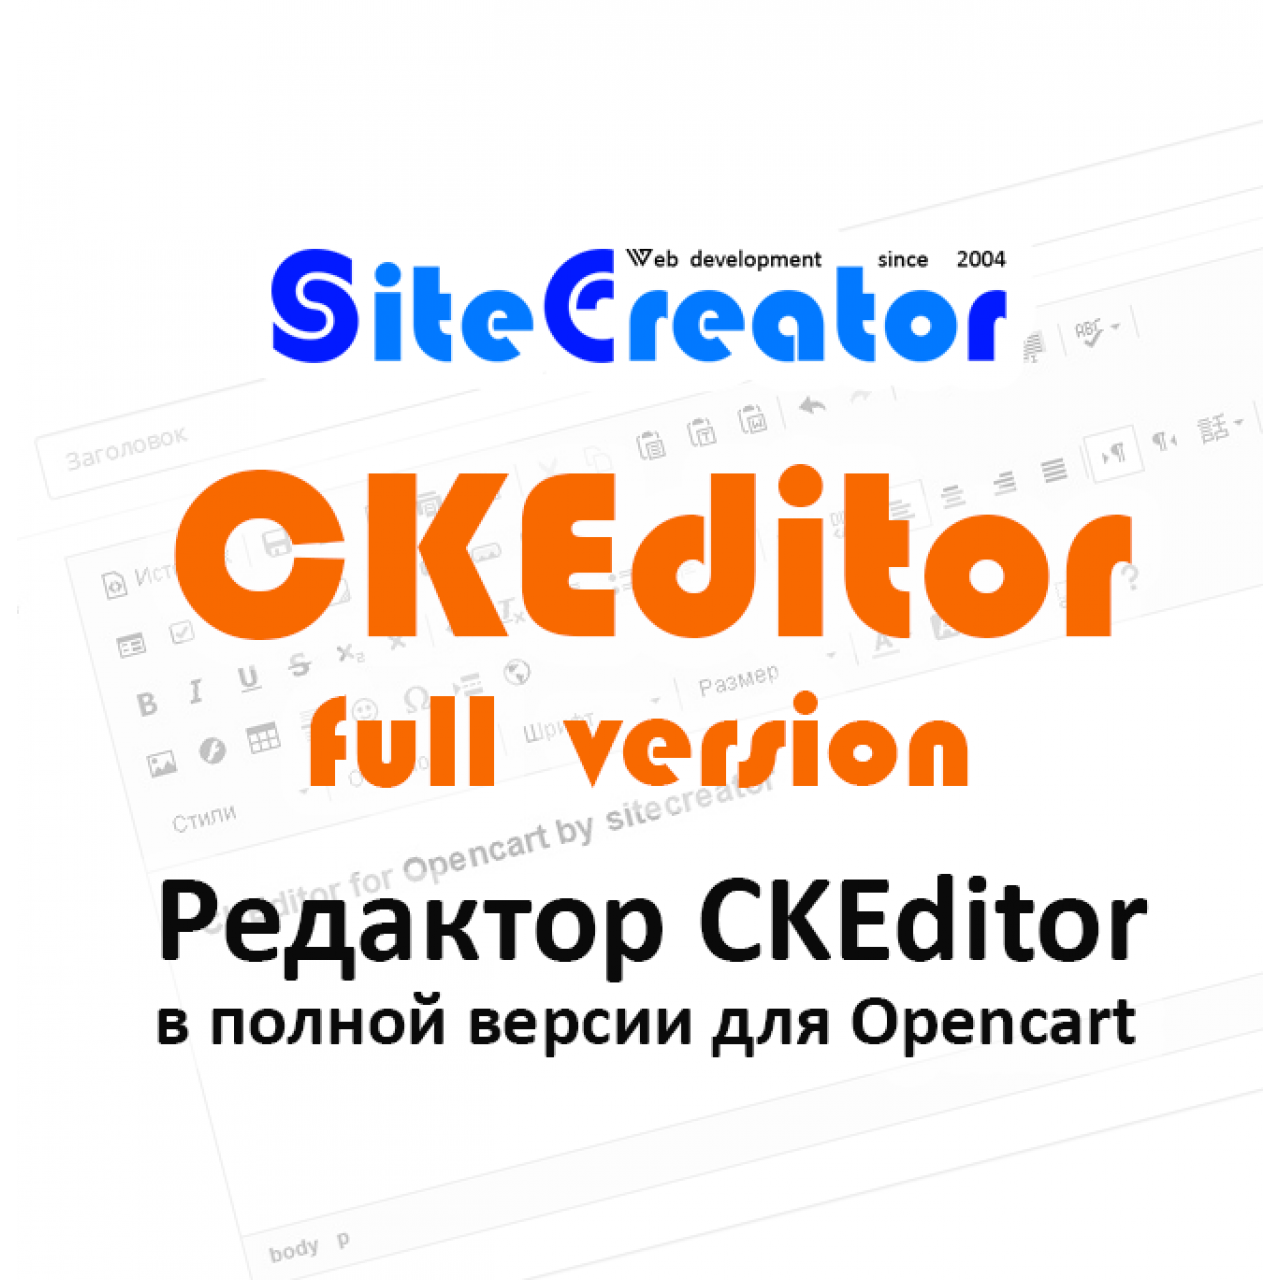 CKEditor for Opencart by sitecreator, полная версия, v. 1.0.3 из категории Редакторы для CMS OpenCart (ОпенКарт)